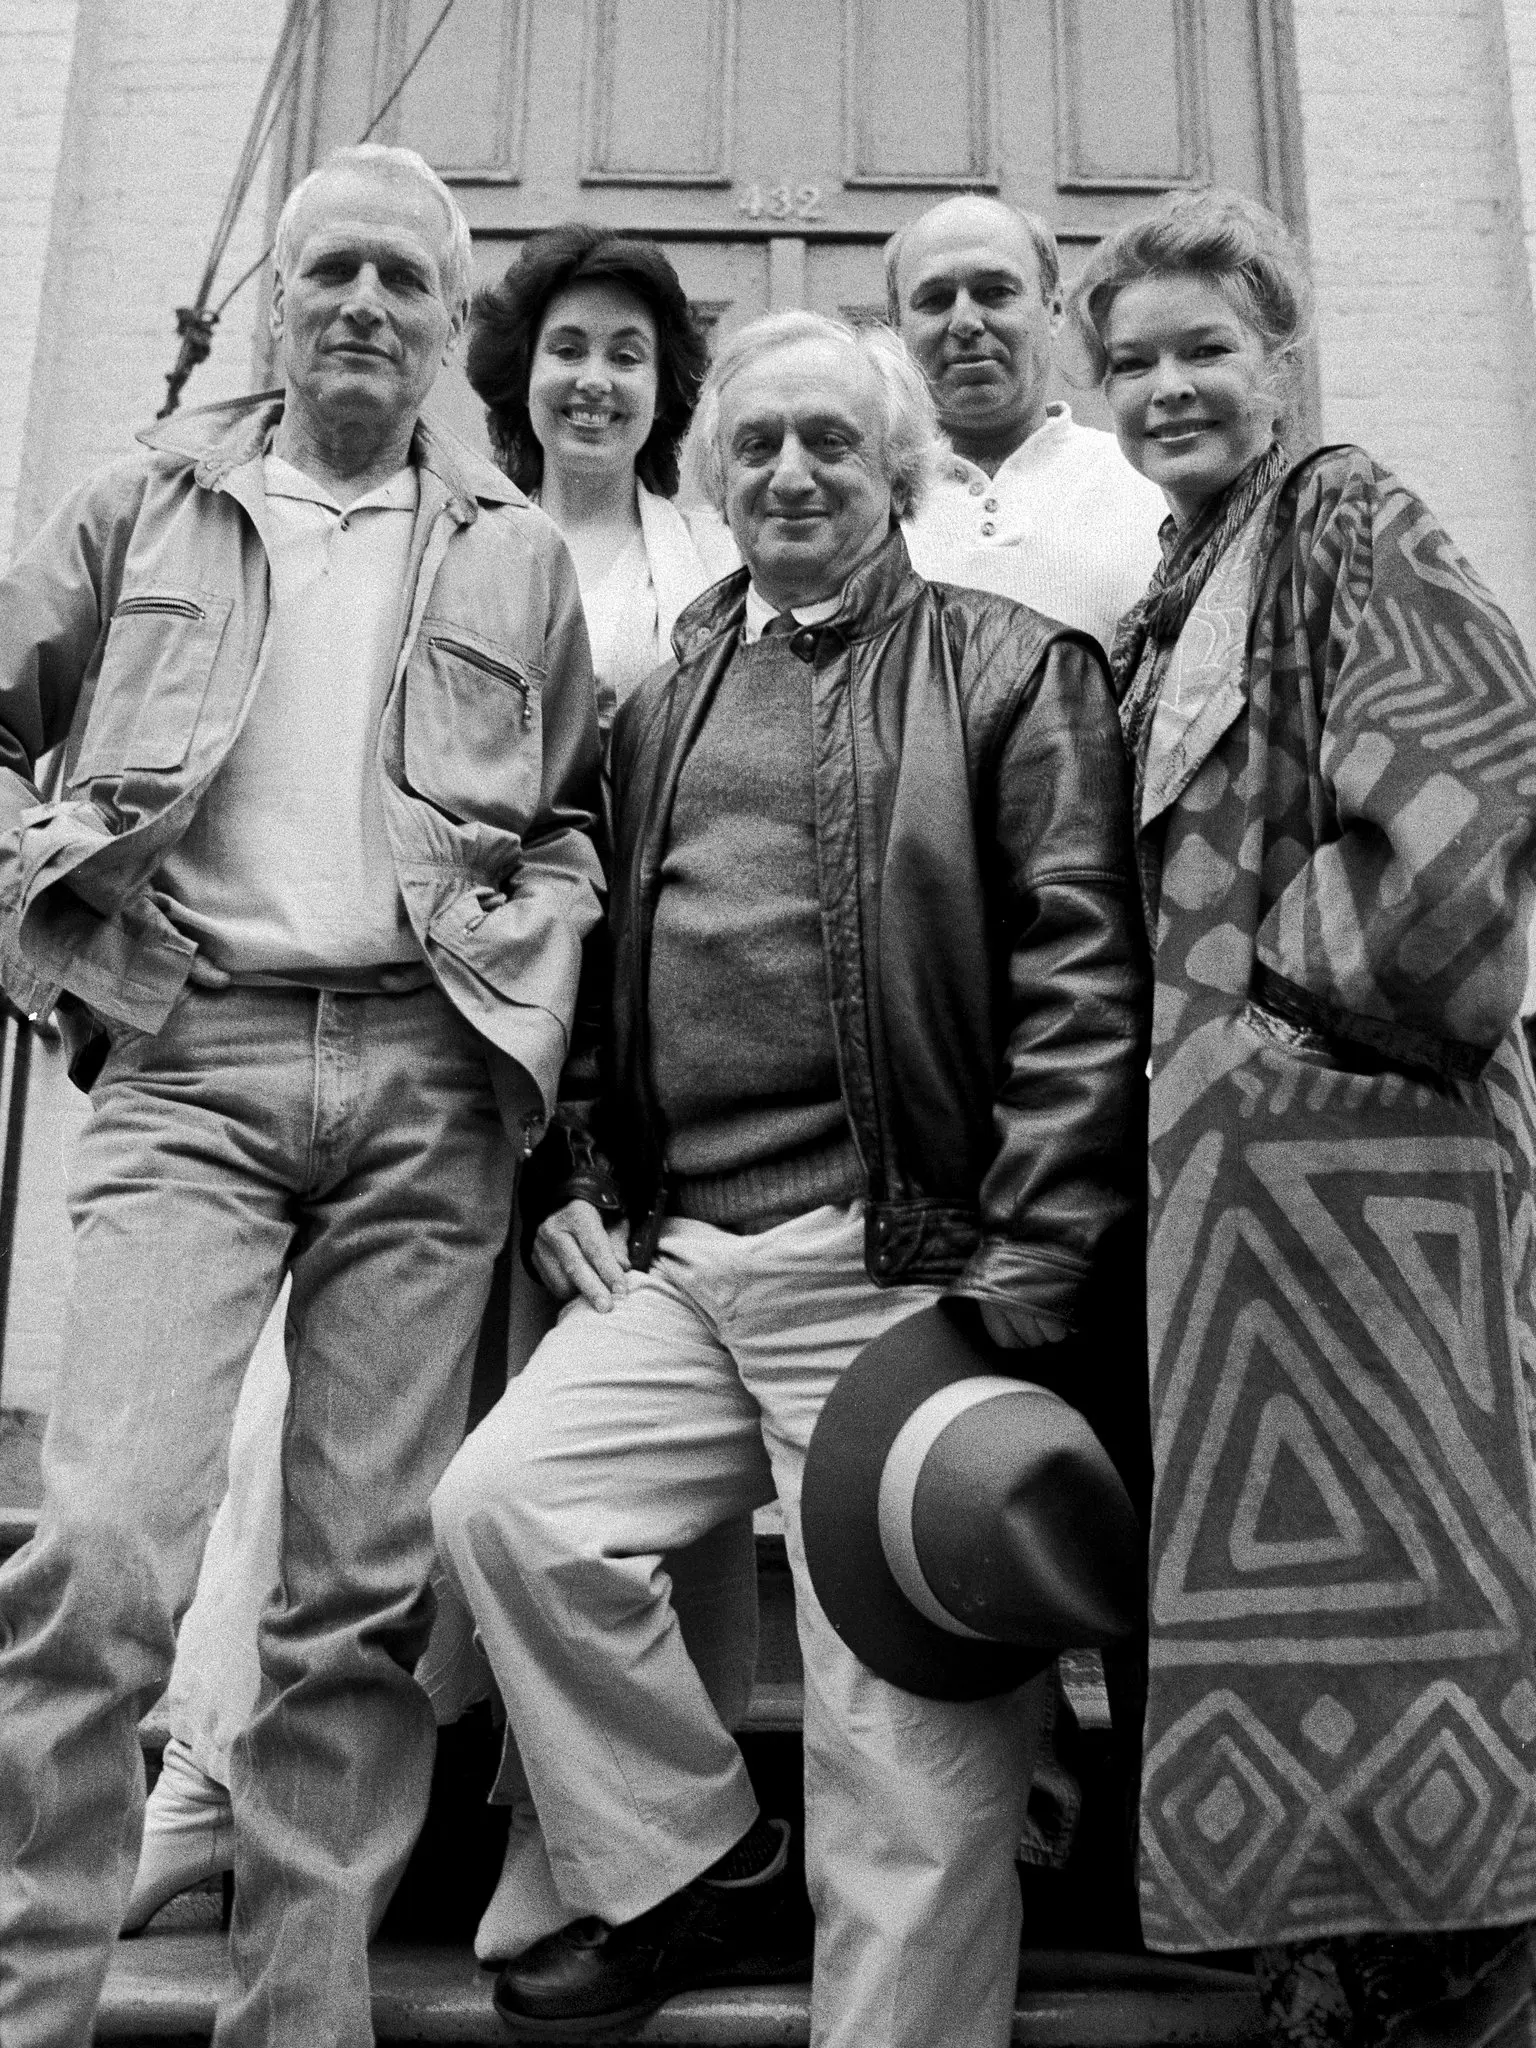 Corsaro, centro, em 1988 com, a partir da esquerda, Paul Newman, Patty Ewald, Peter Masterson e Ellen Burstyn fora do Actors Studio em Nova York, depois que Corsaro foi nomeado seu diretor artístico.Crédito...Vic DeLucia/The New York Times